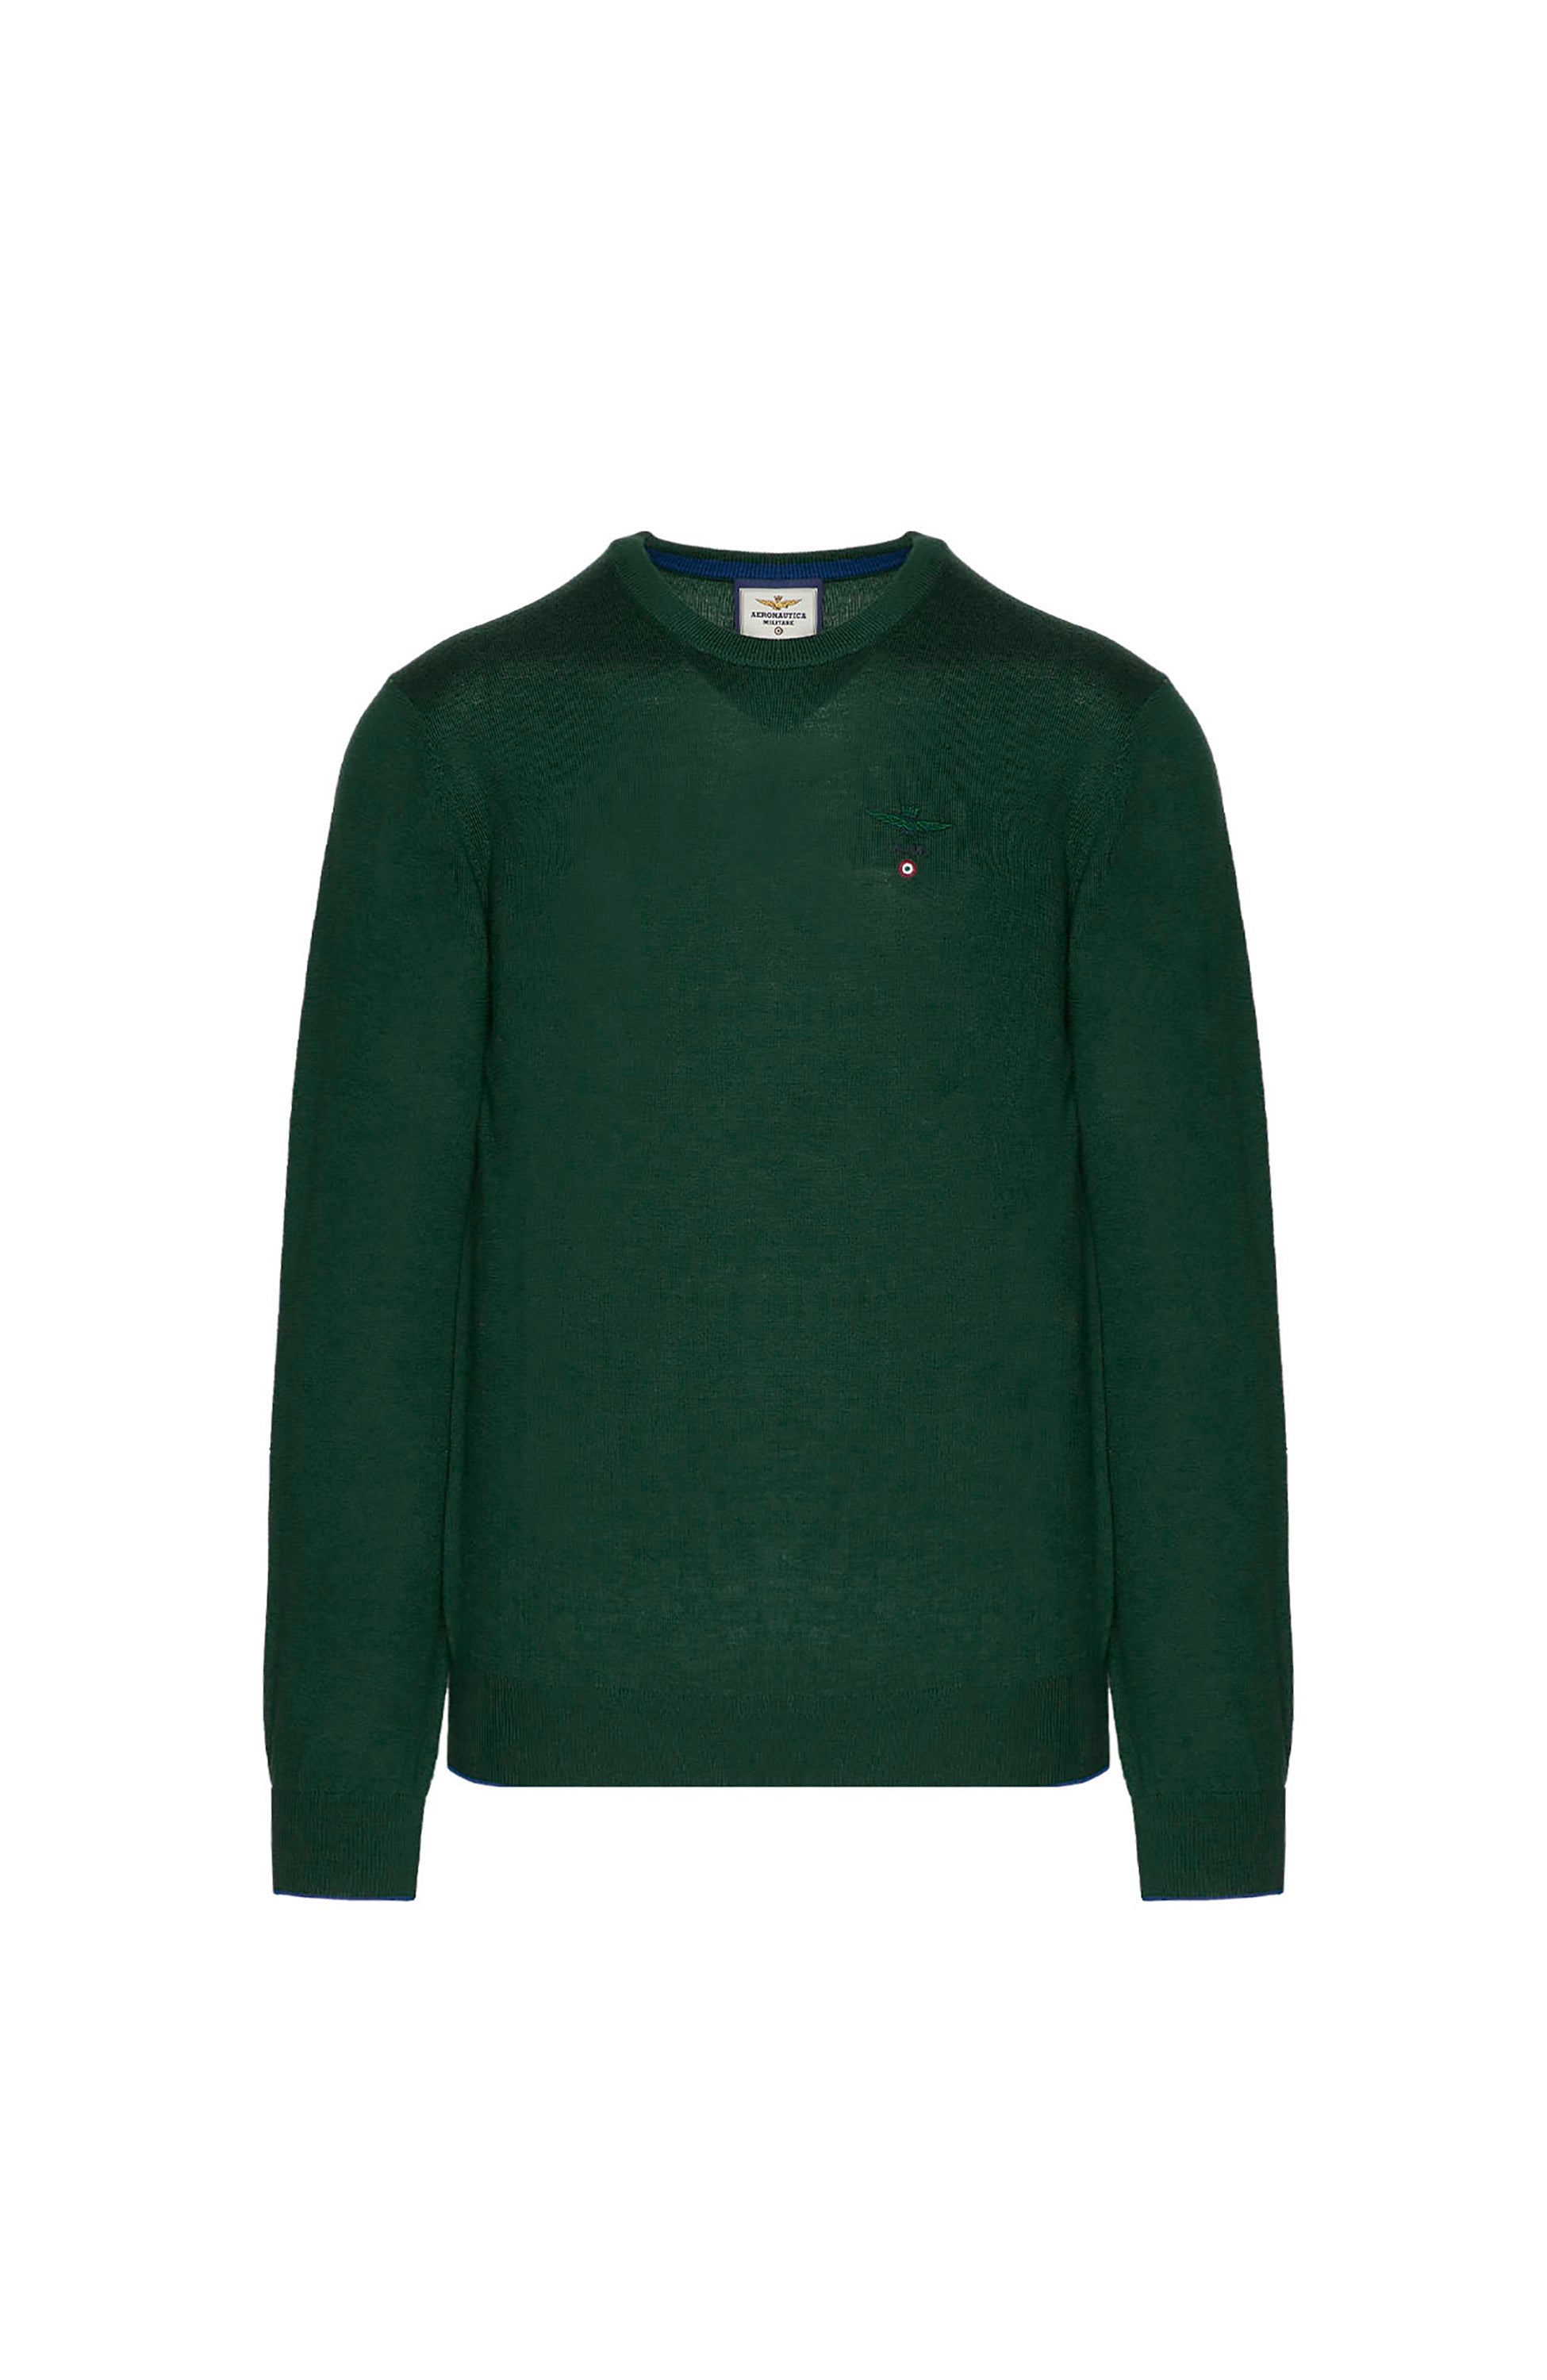 Roundneck merino wool sweater